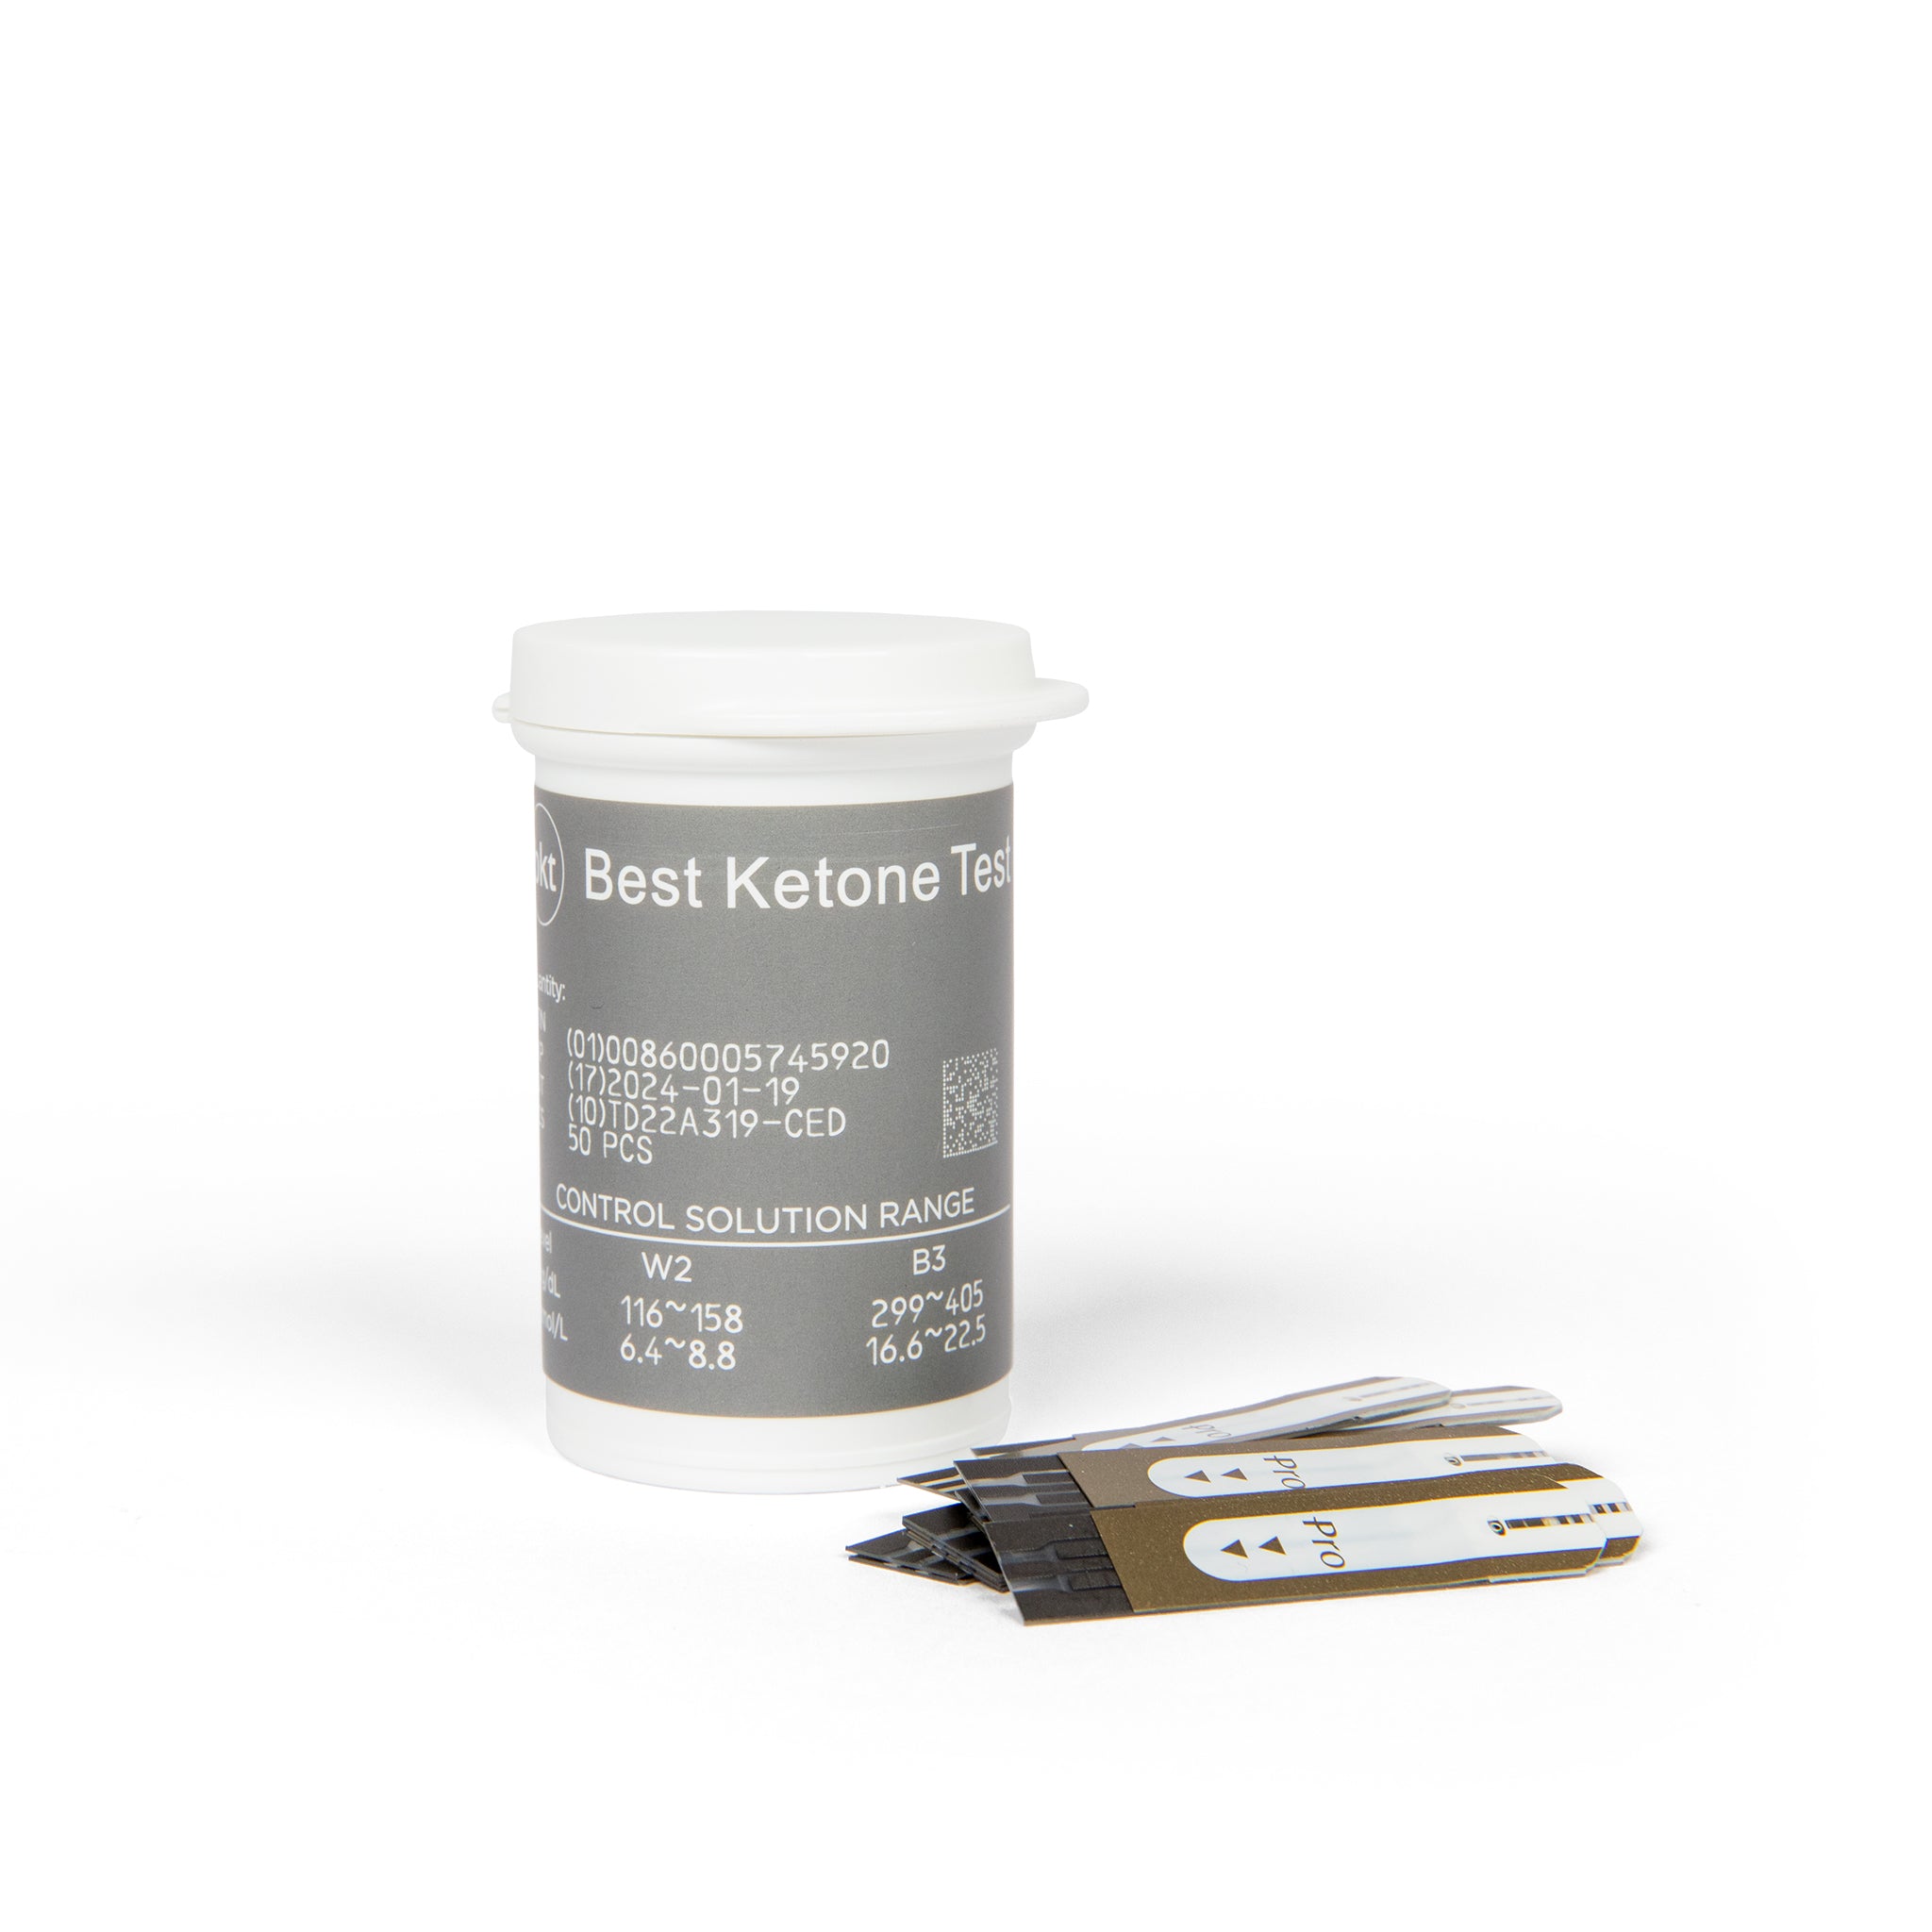 BKT Keto Starter Kit - Best Ketone Test